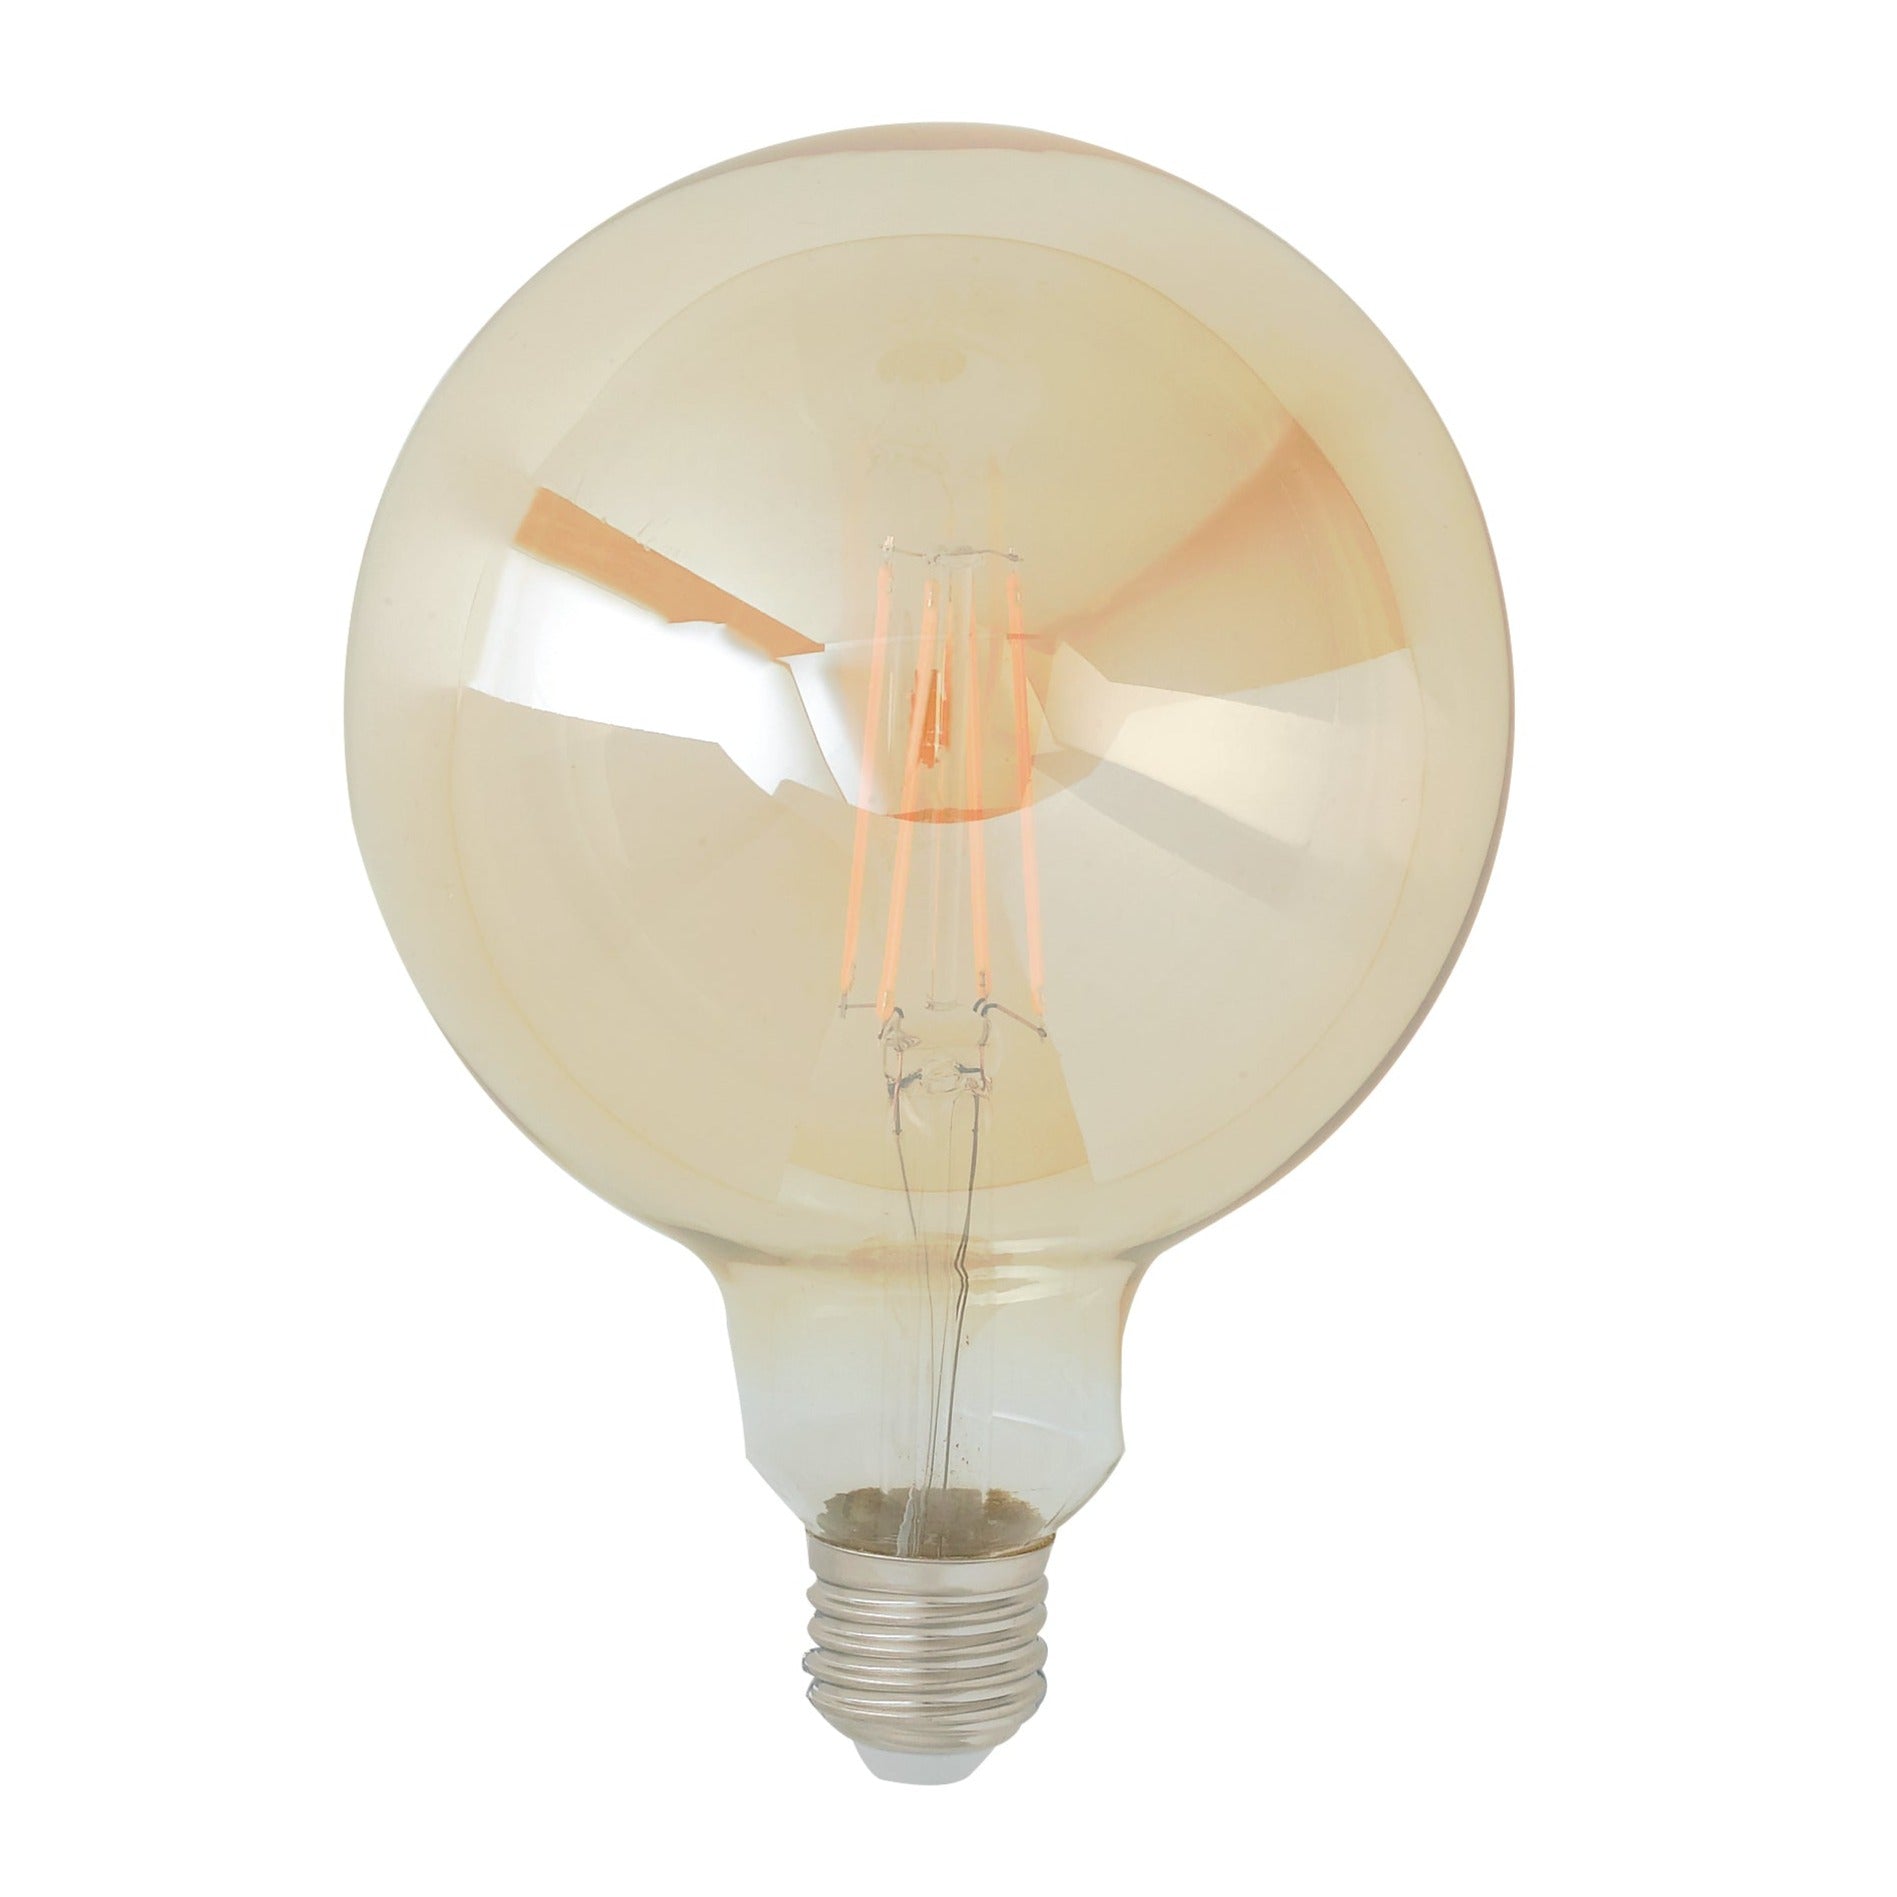 Ampoule LED Globe en verre ambré 8W avec douille E27, lumière chaude 2500K